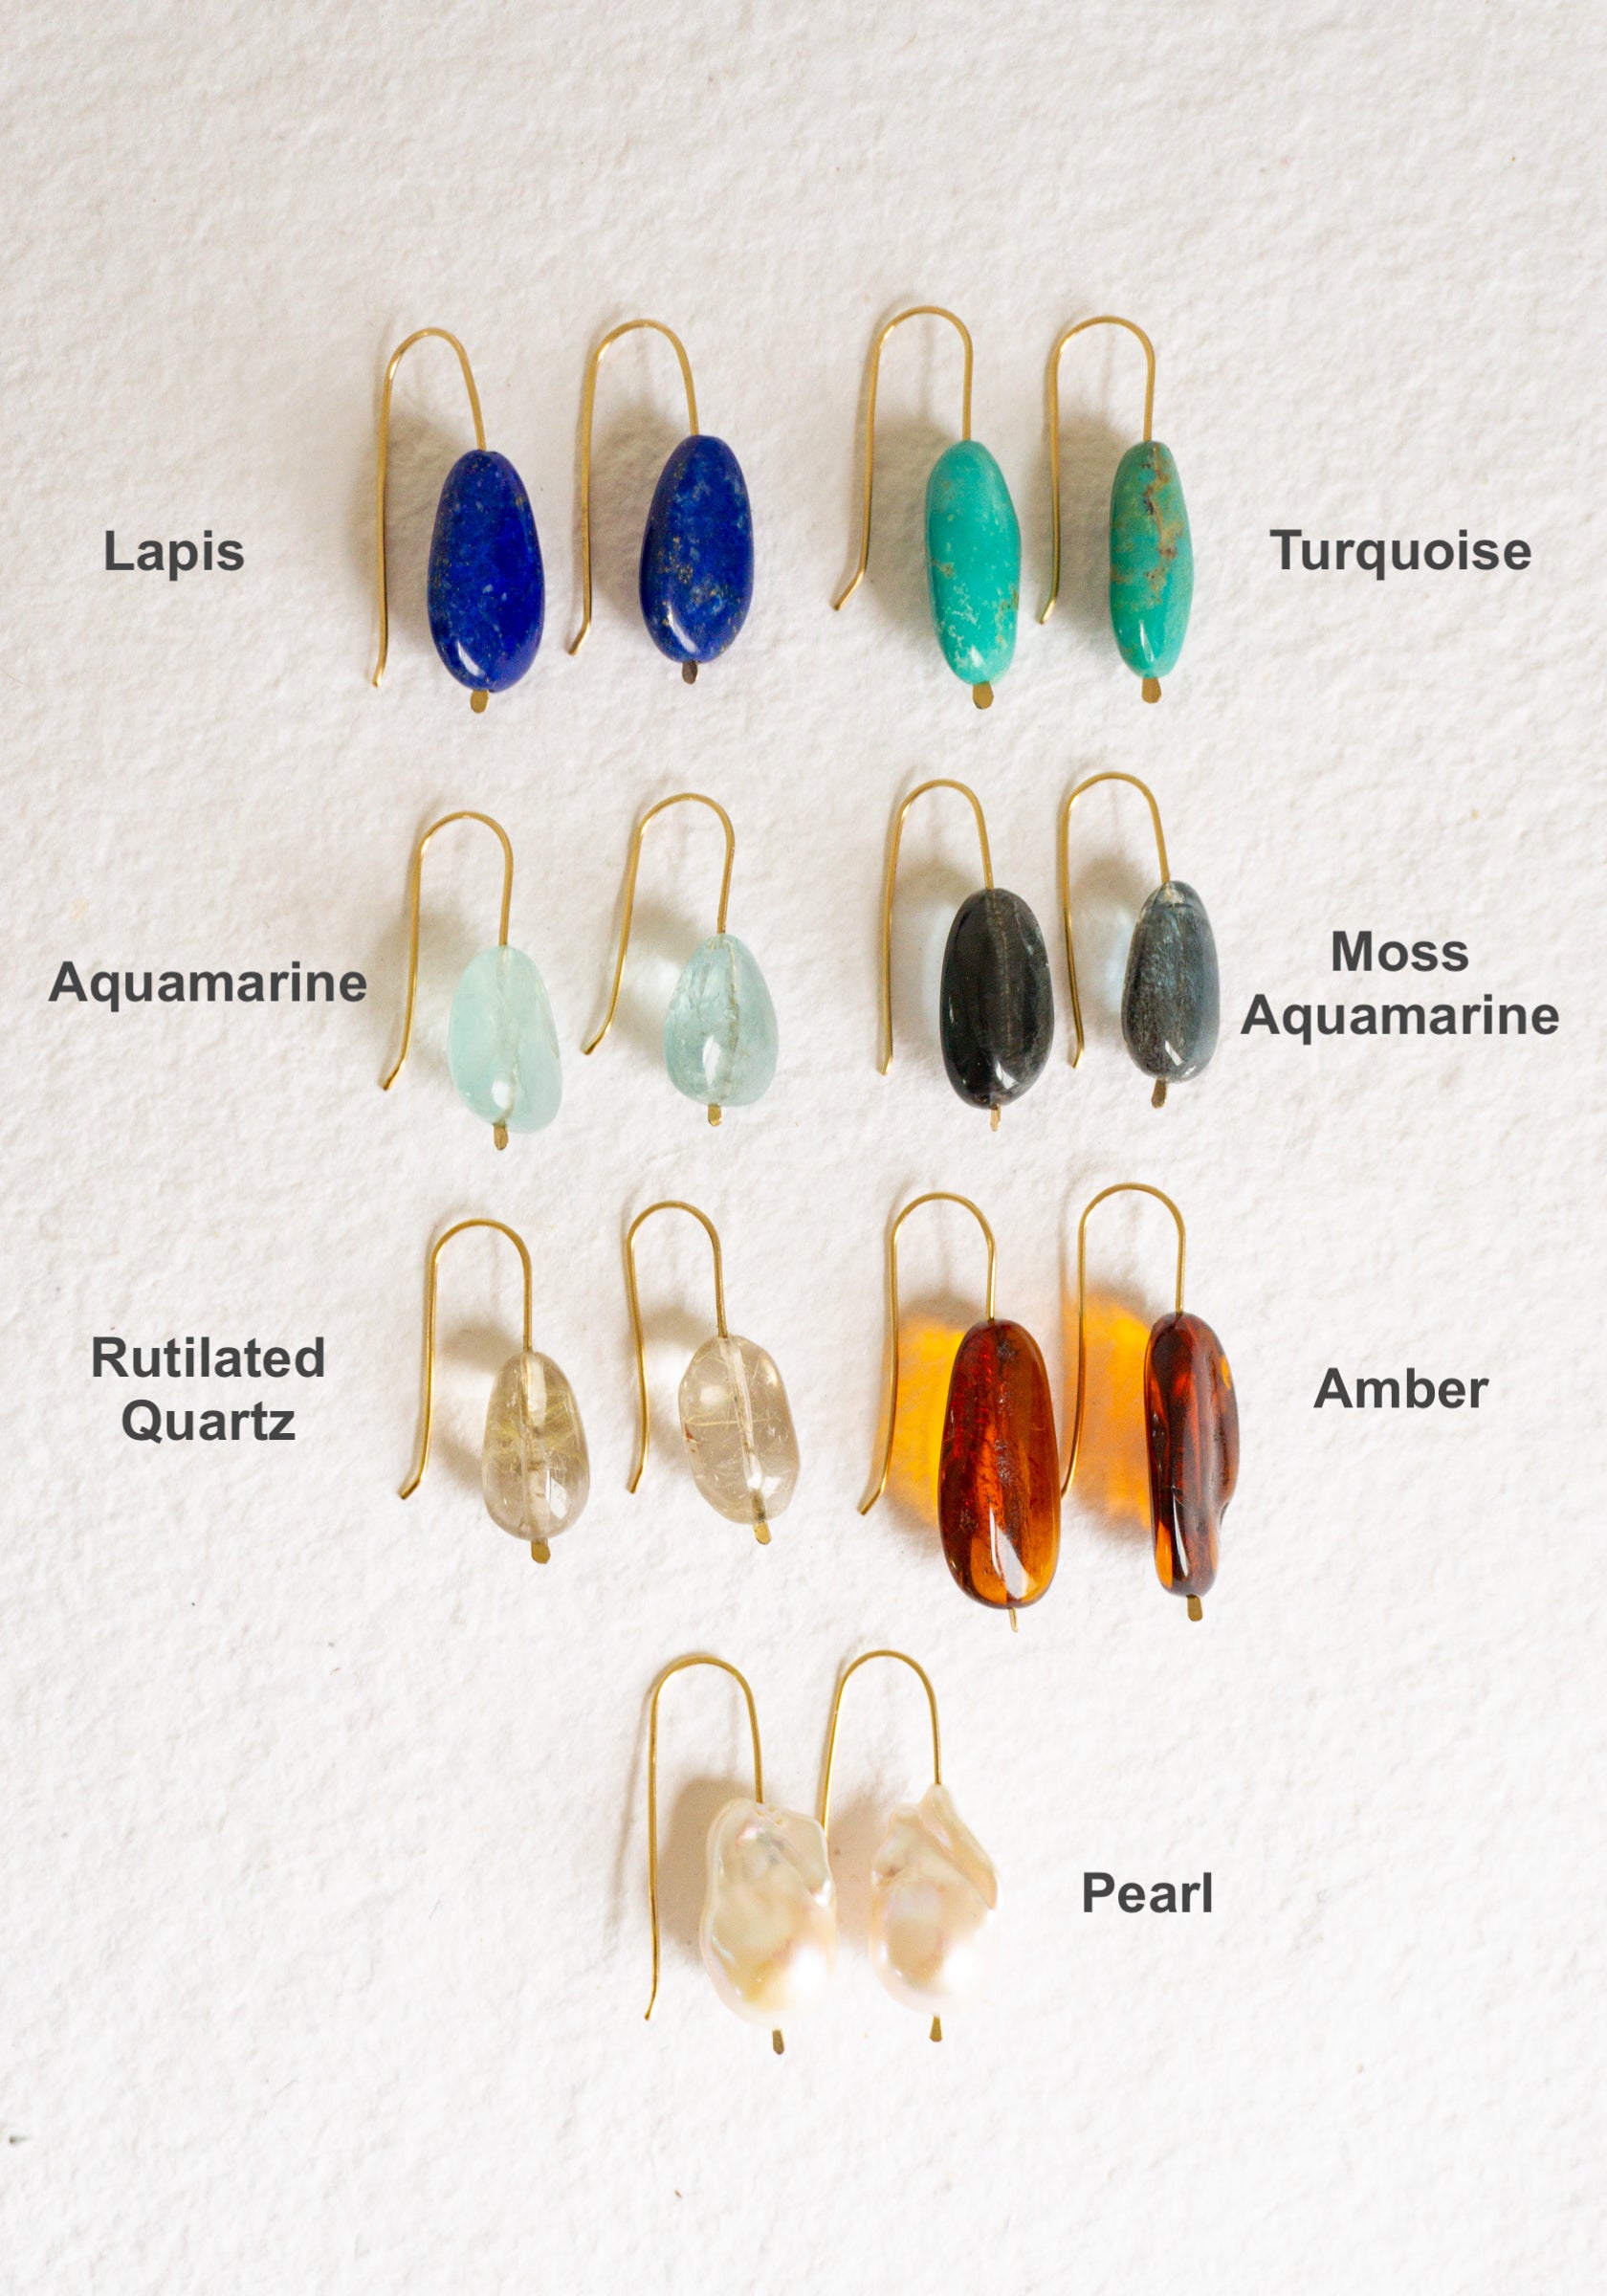 Stone Drop Earrings